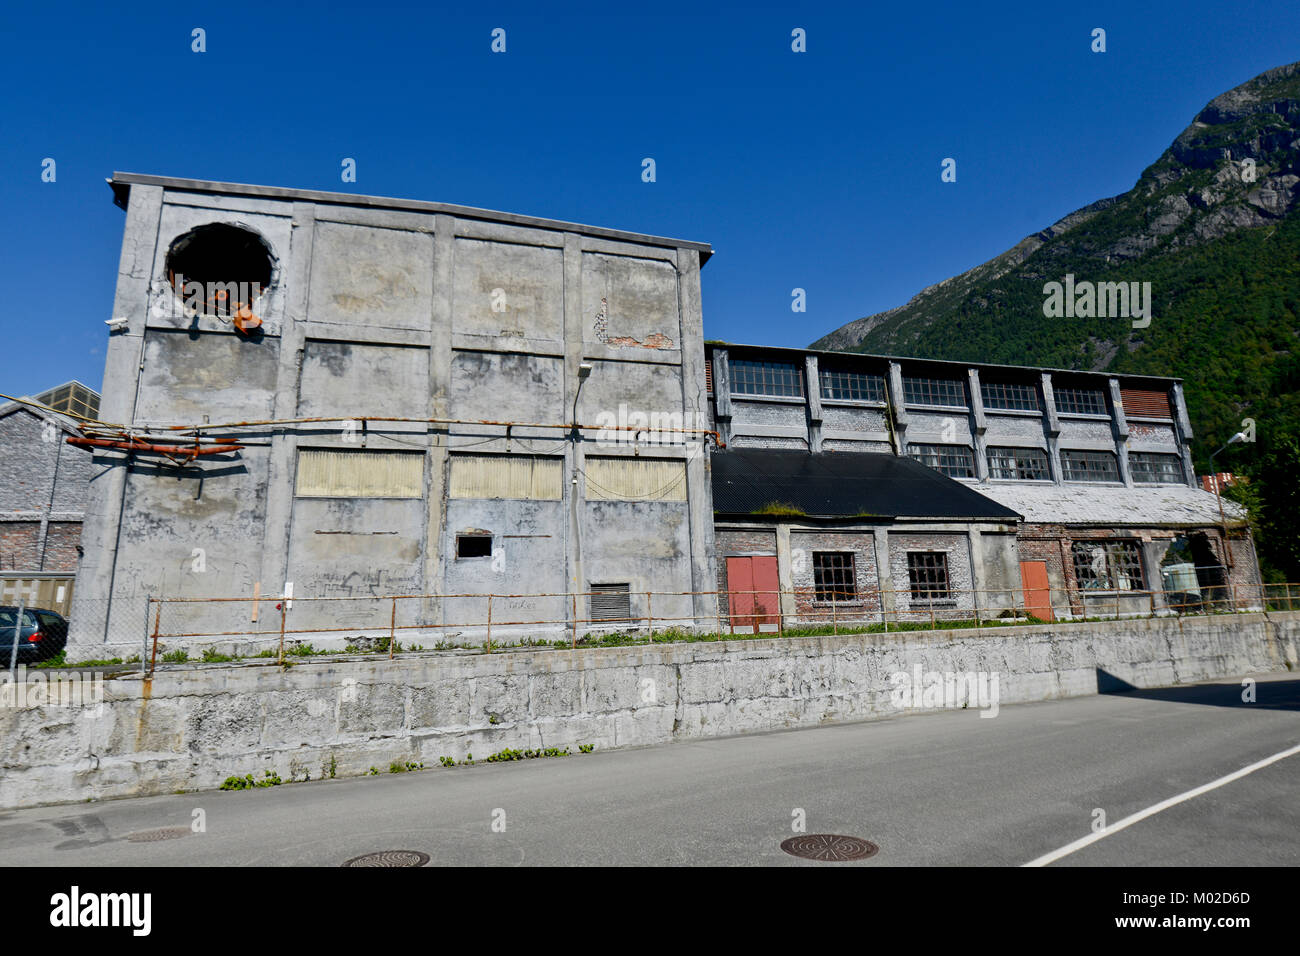 Fábrica de acero de Odda en Noruega (Simo i Odda) - fábrica industrial abandonada Foto de stock